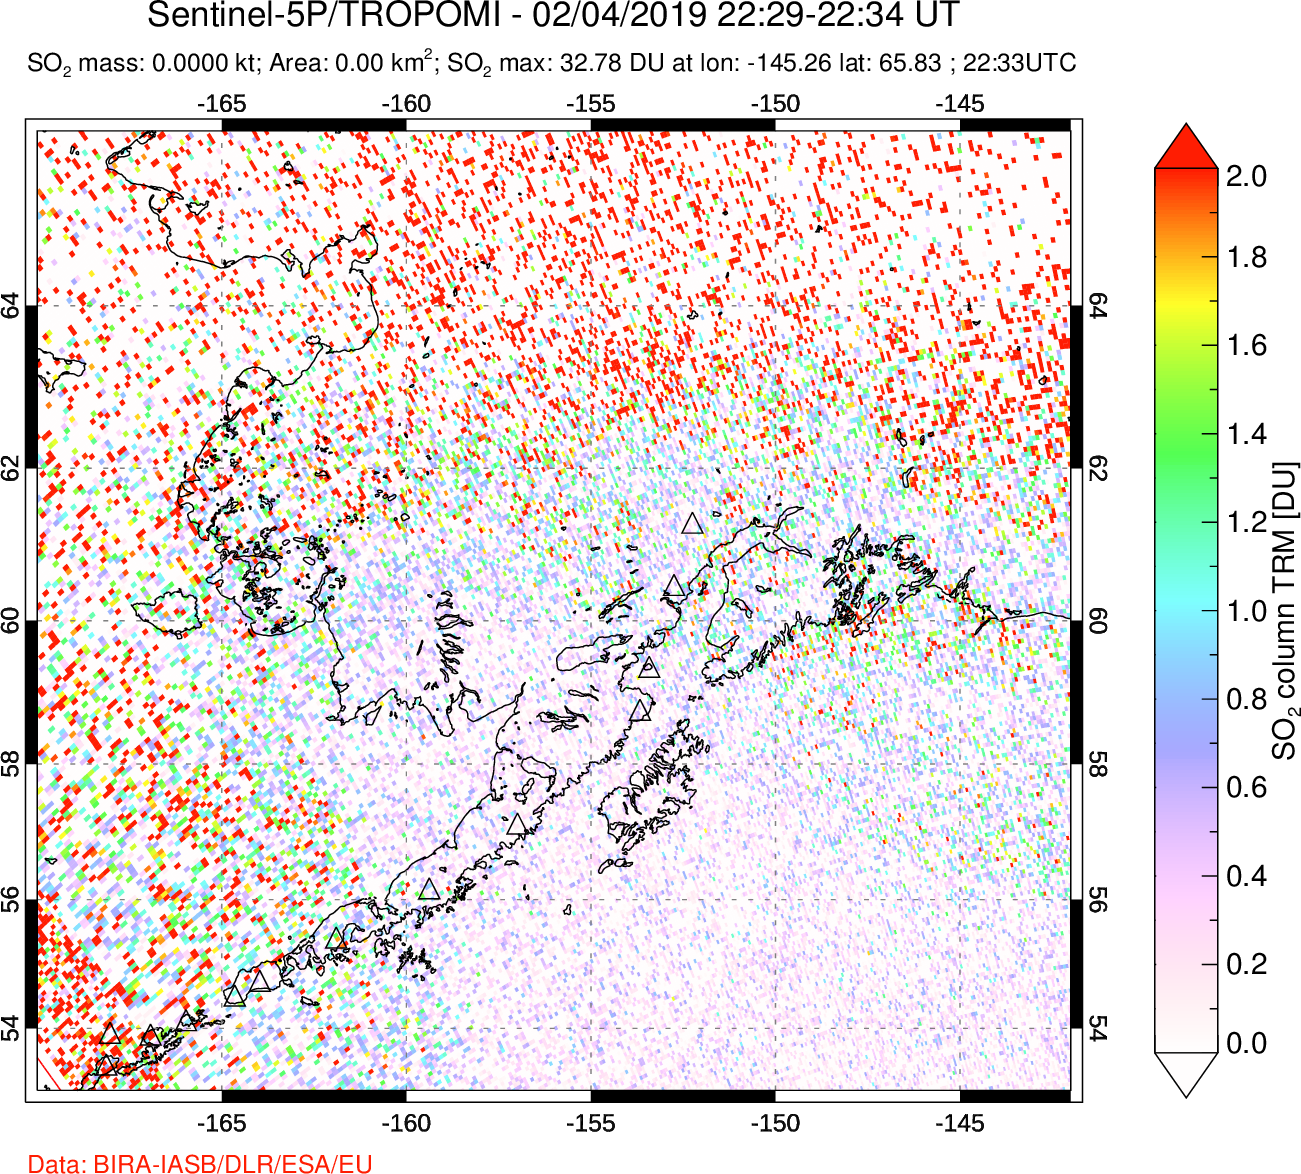 A sulfur dioxide image over Alaska, USA on Feb 04, 2019.